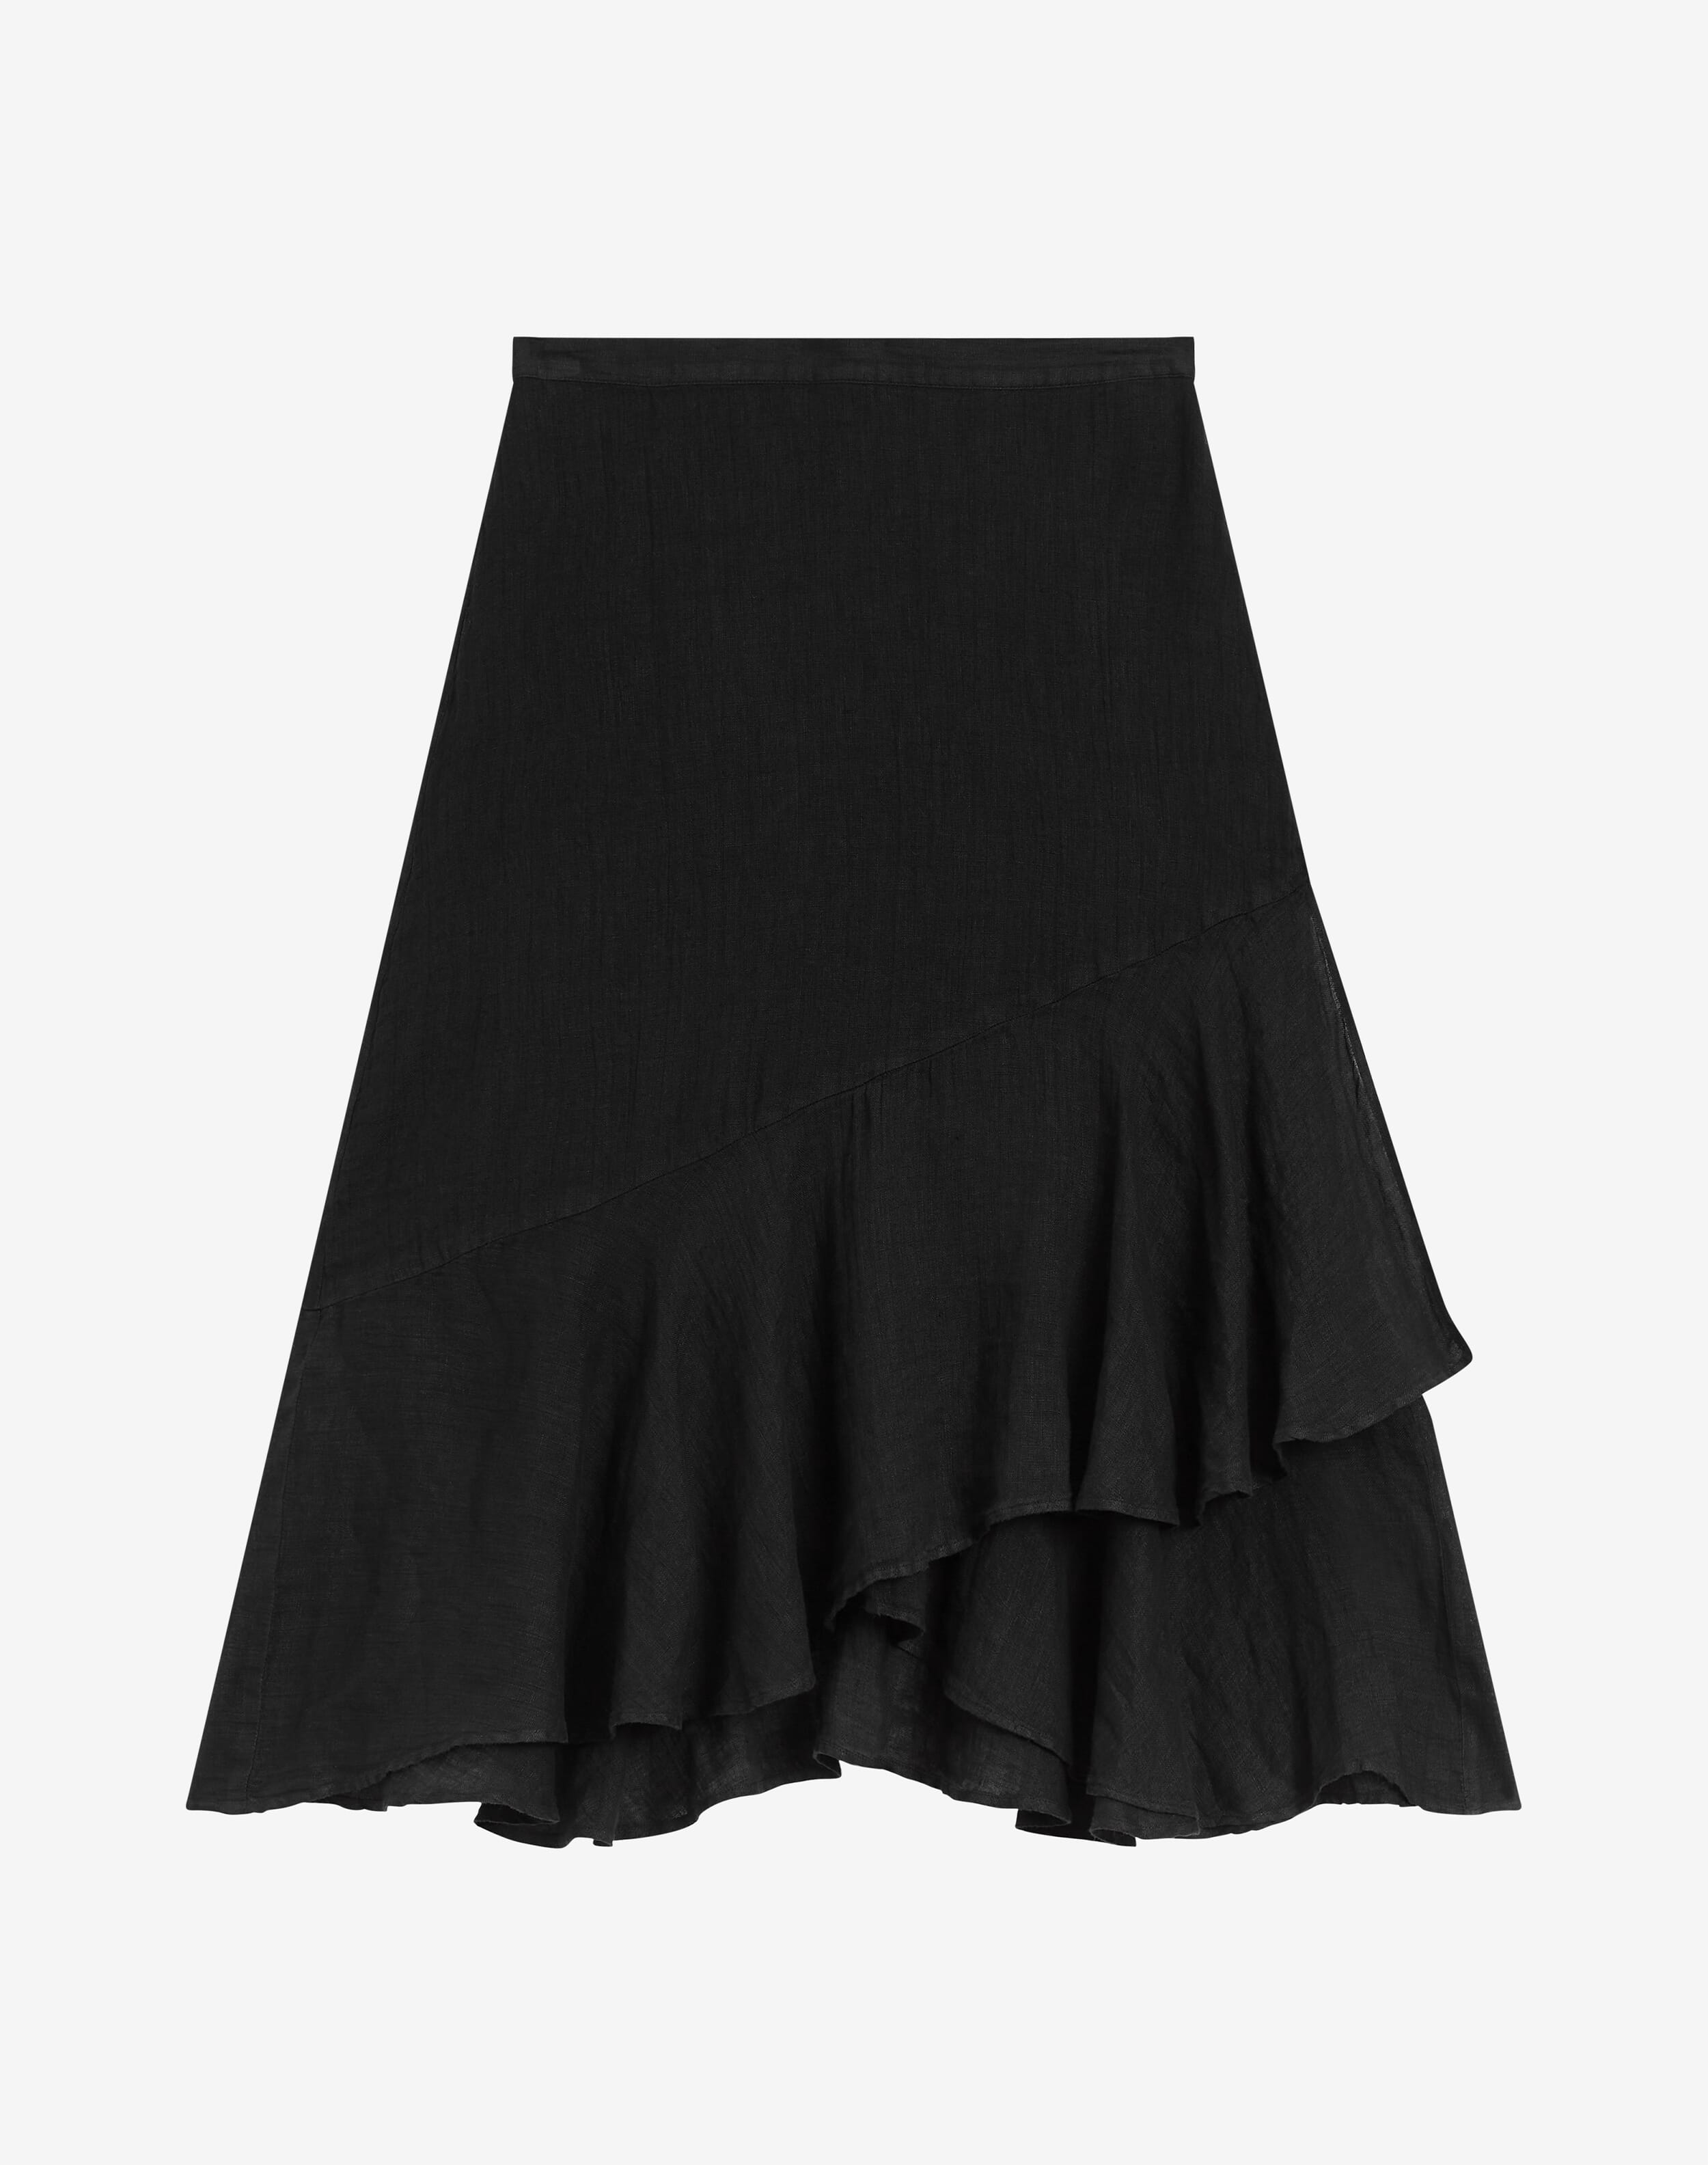 Women’s Skirts | Maxi, Floral & Linen Skirts | Brora Online